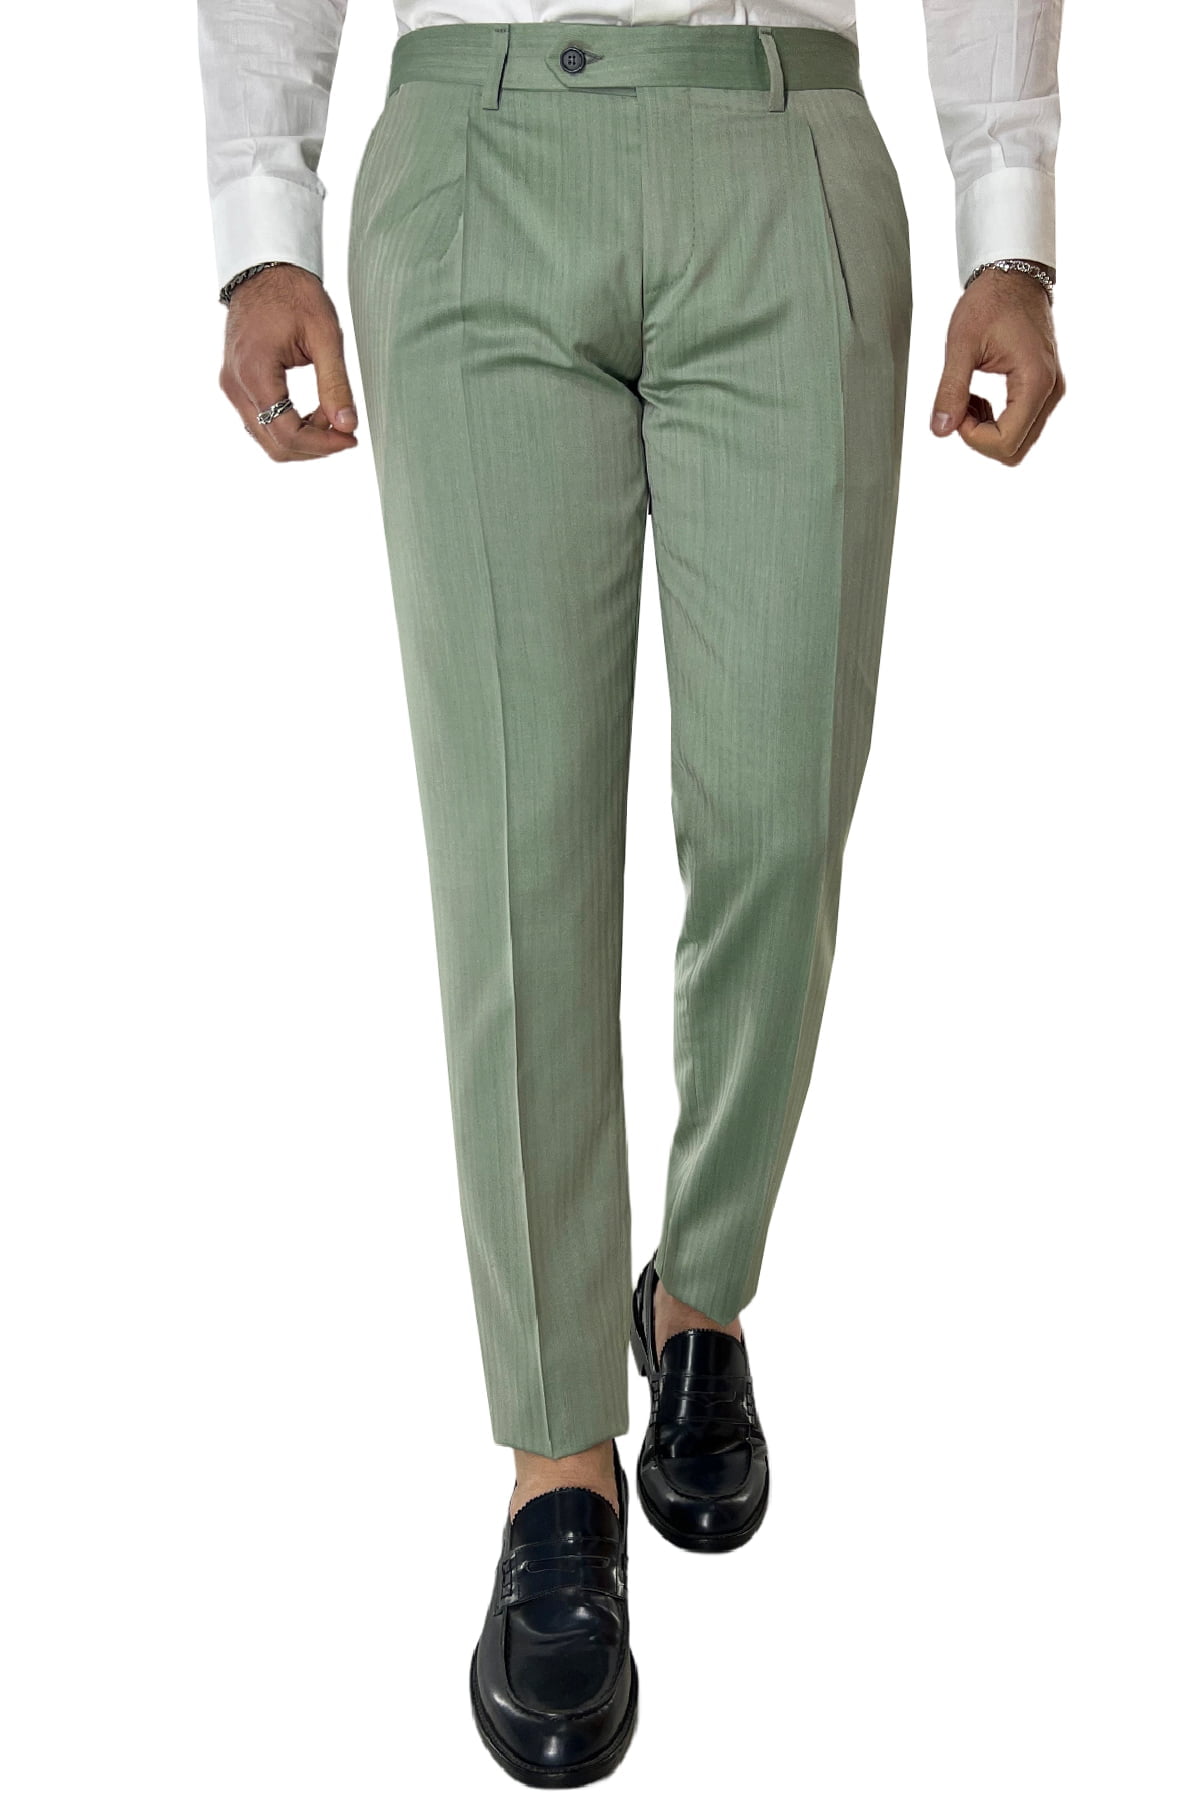 Pantalone uomo verde Solaro in fresco lana e seta Holland & Sherry vita alta con una pinces e risvolto 4cm